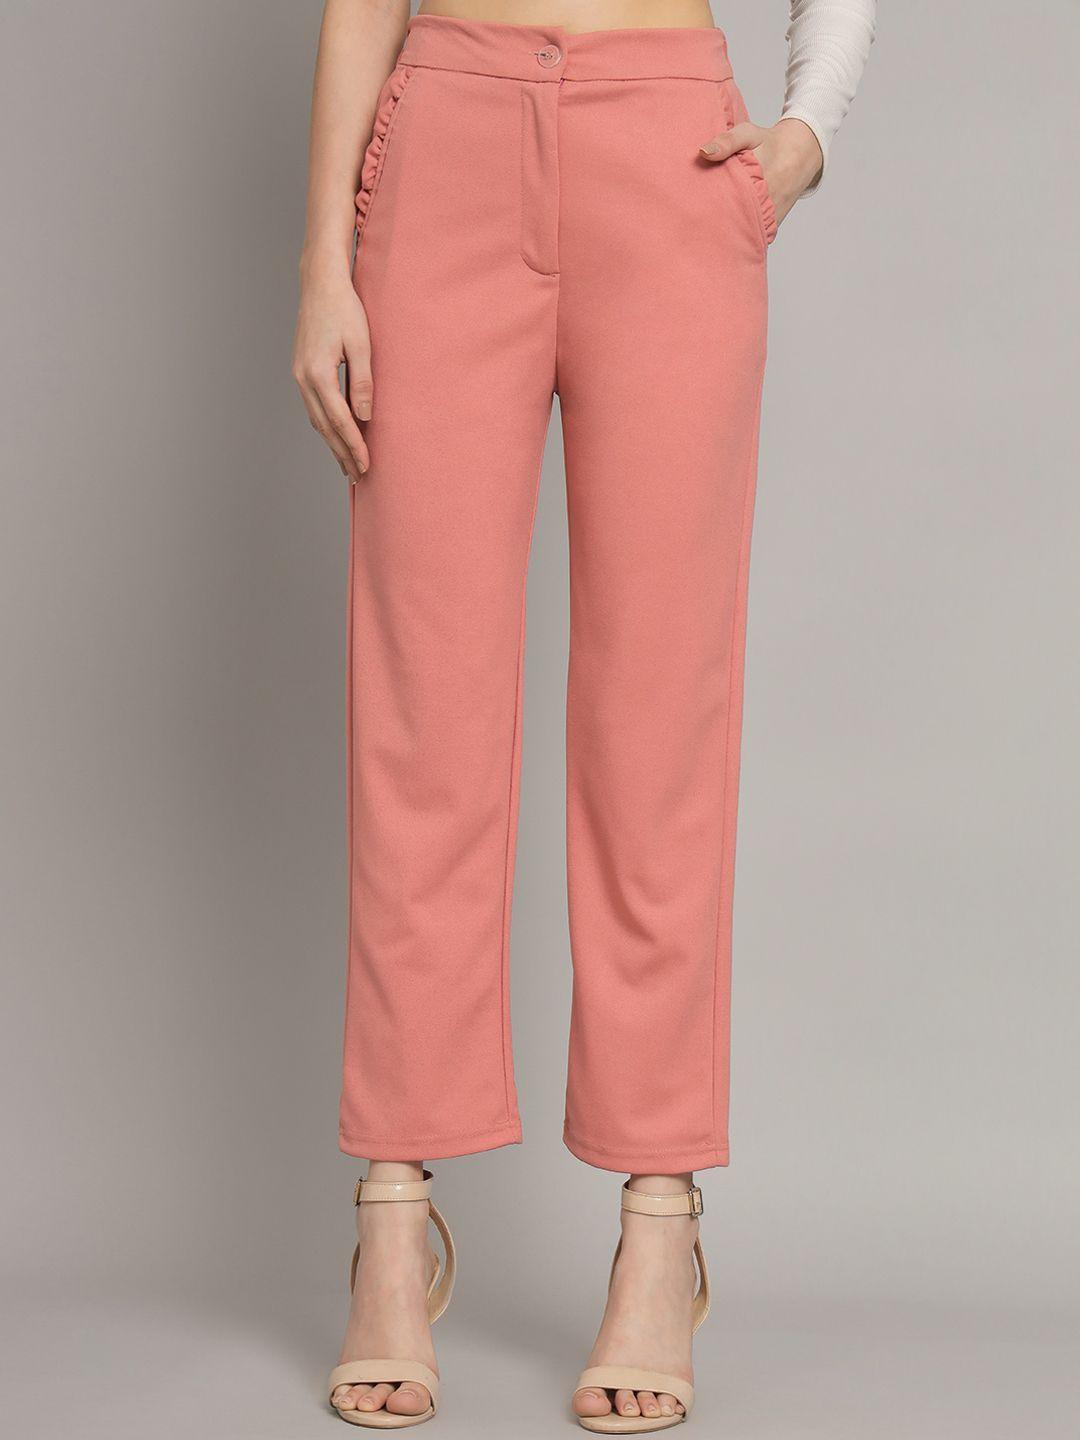 q-rious-women-peach-coloured-trousers